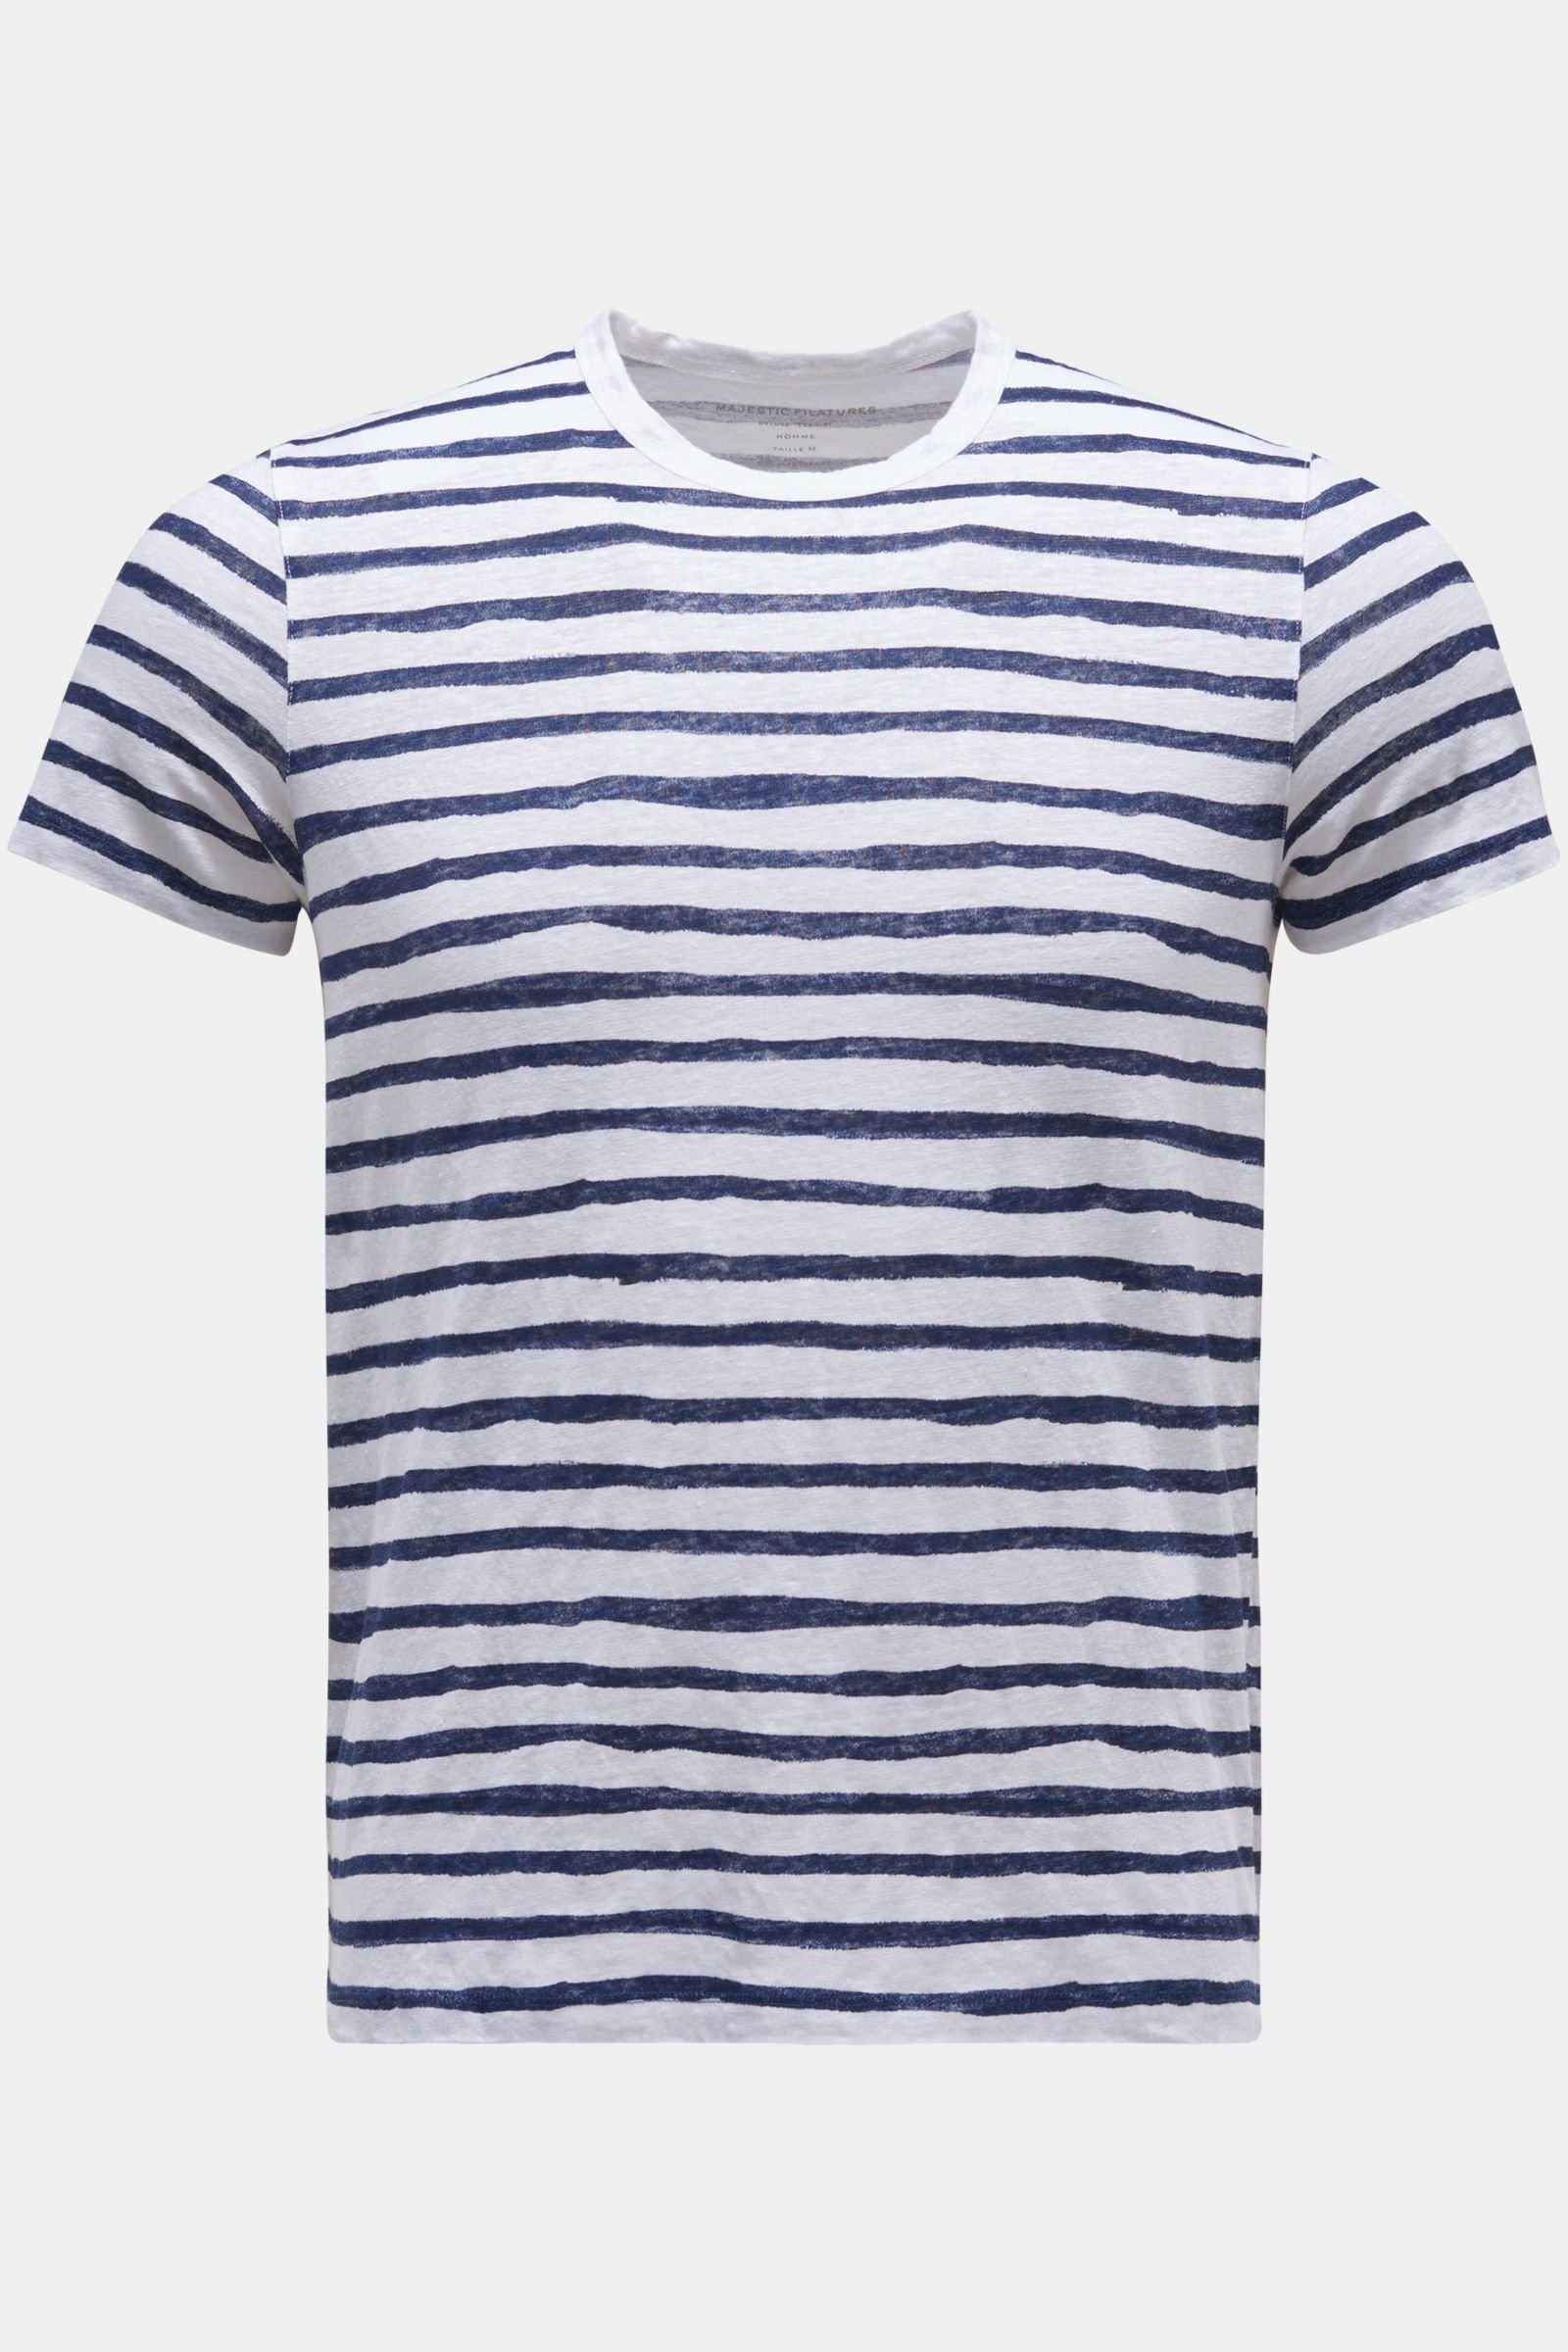 Leinen Rundhals-T-Shirt navy/weiß gestreift 